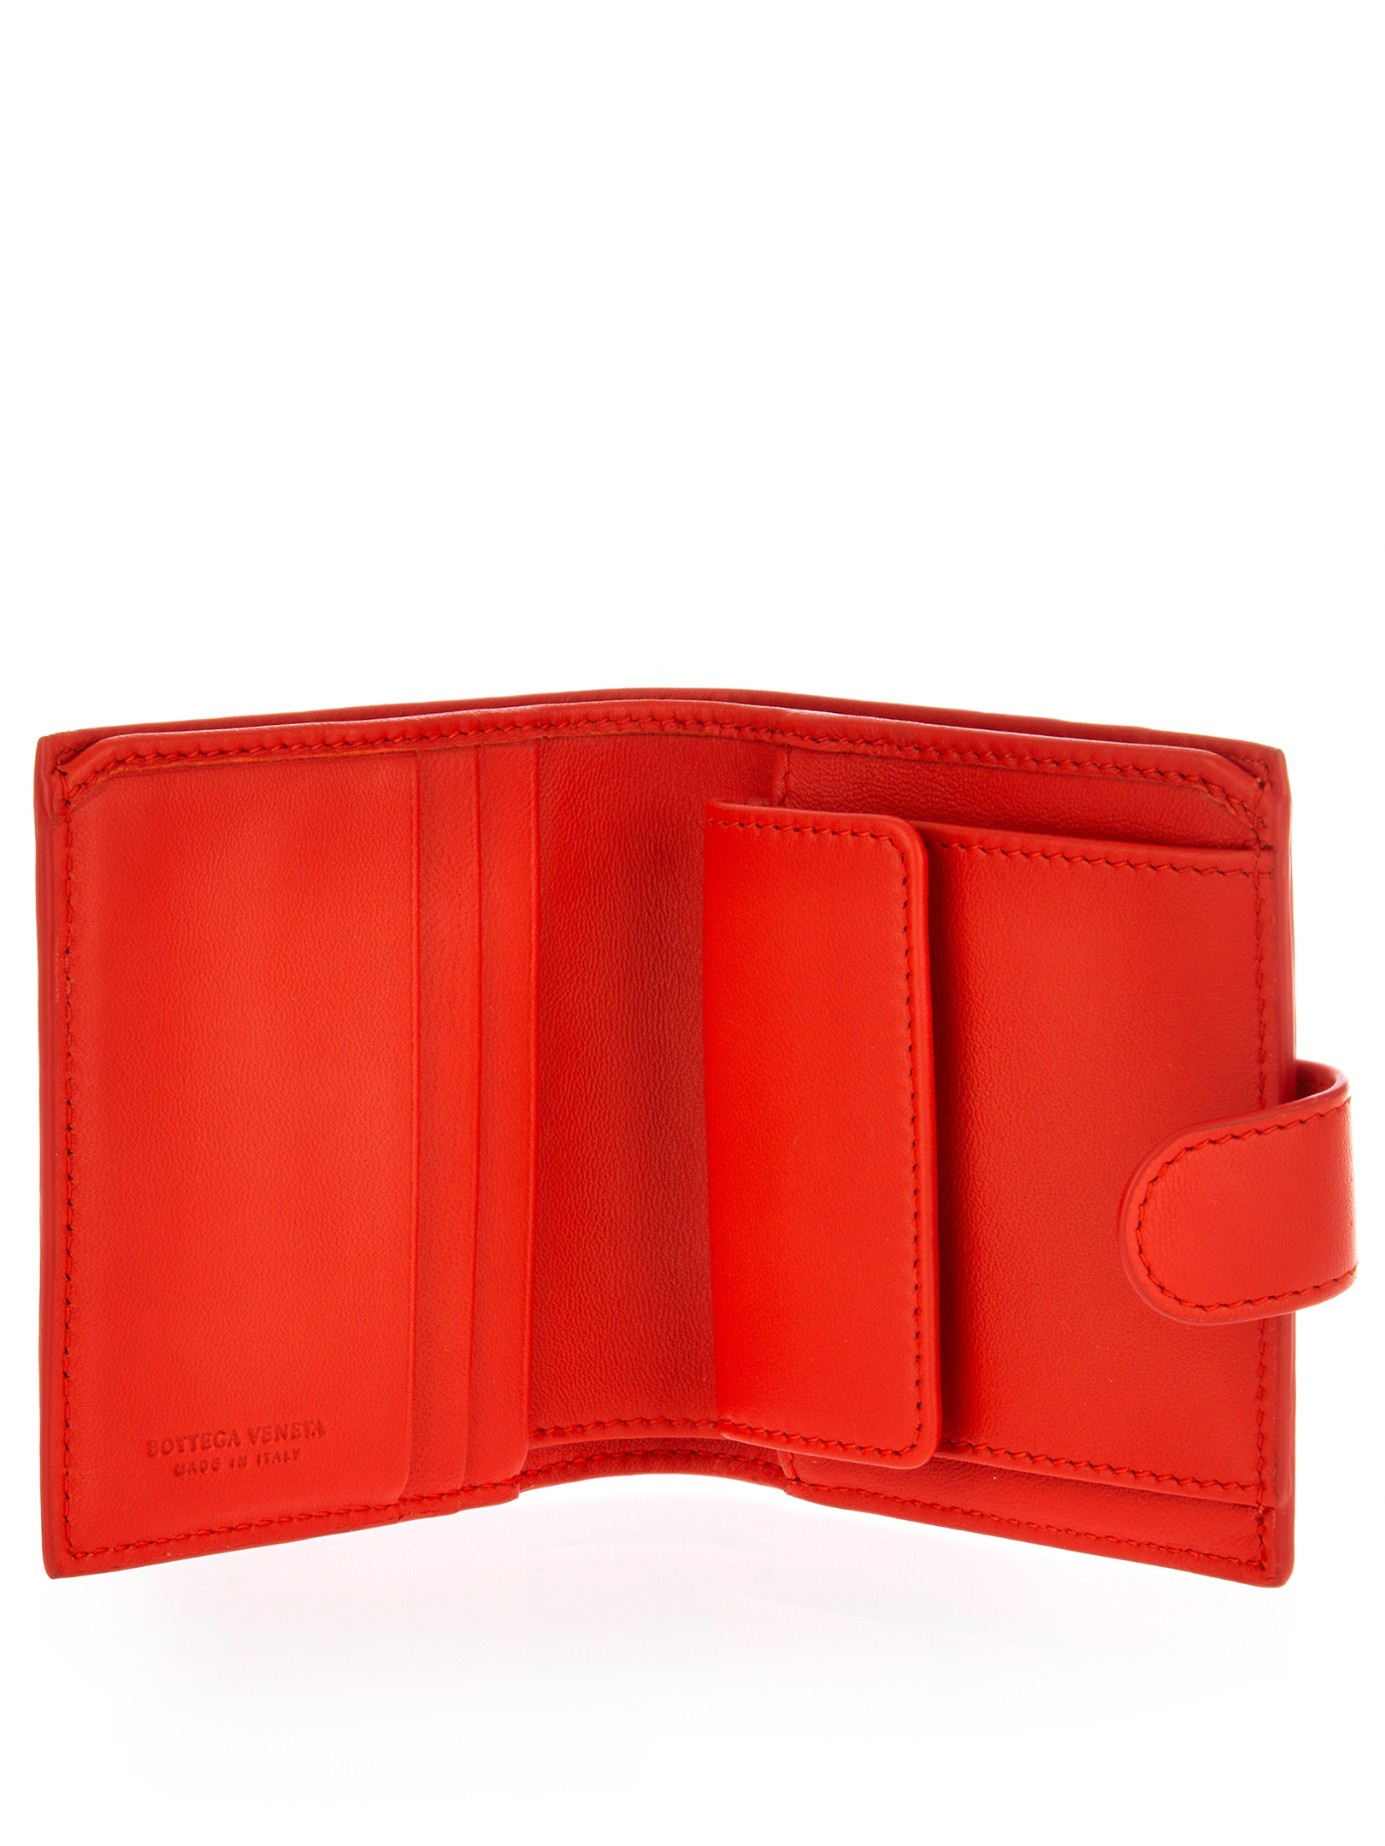 Lyst - Bottega Veneta Small Intrecciato Leather Wallet in Red